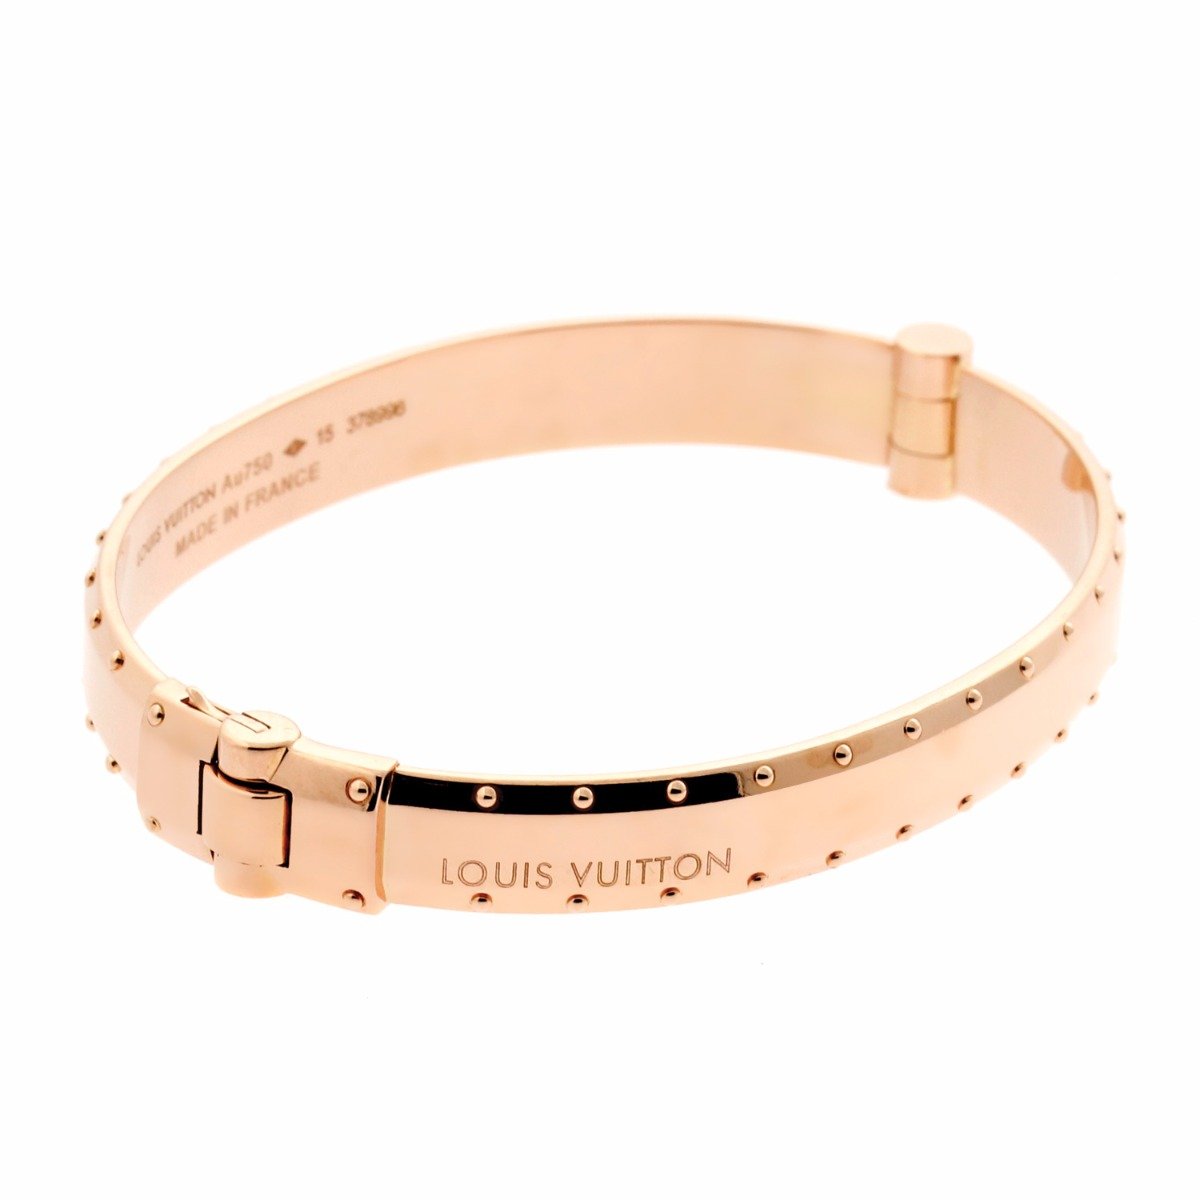 Louis Vuitton Fashion Cuff Bracelets for sale